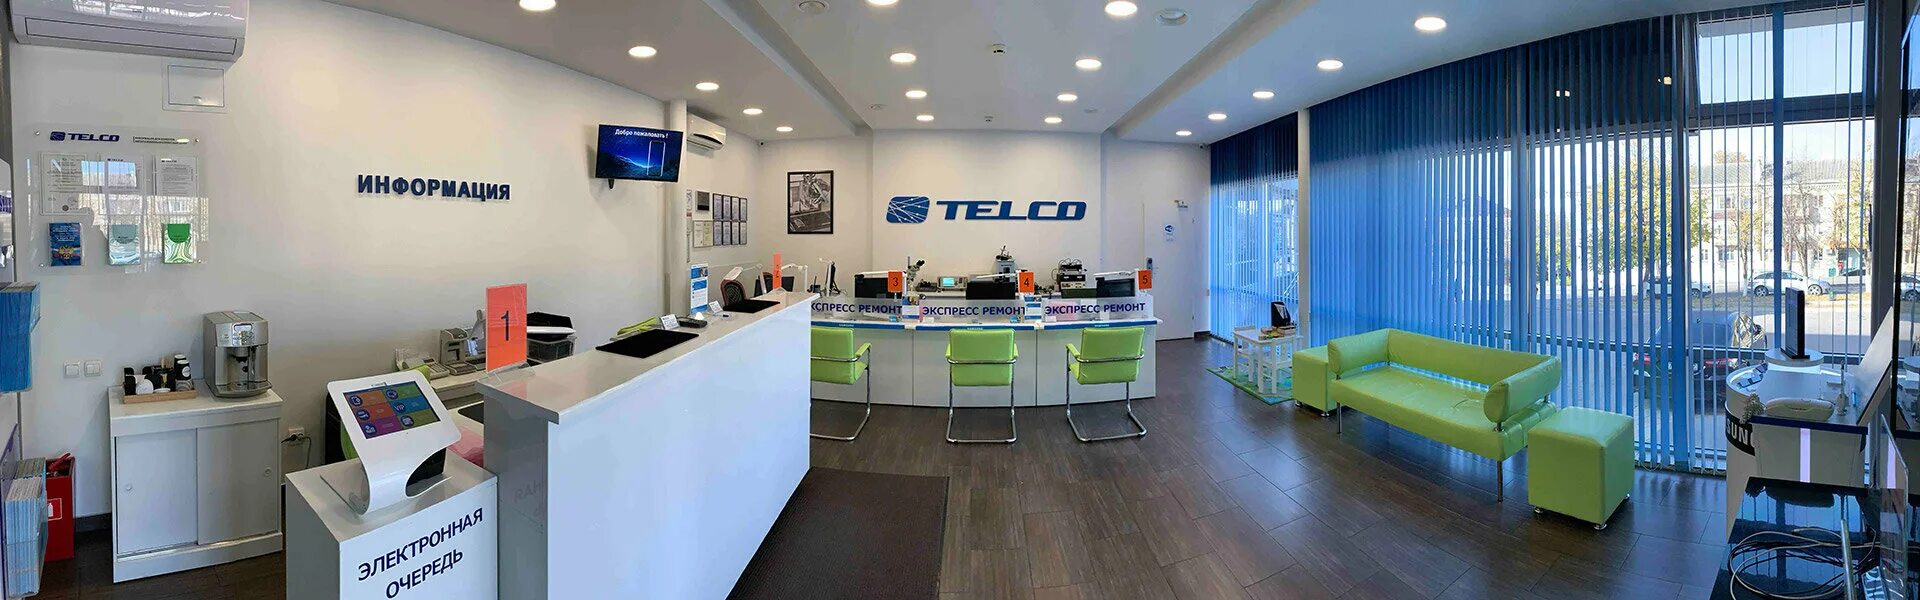 Телко центр. Авторизованный сервисный центр Telco. Дизайн интерьера сервисного центра. Apple центр Пятигорск.